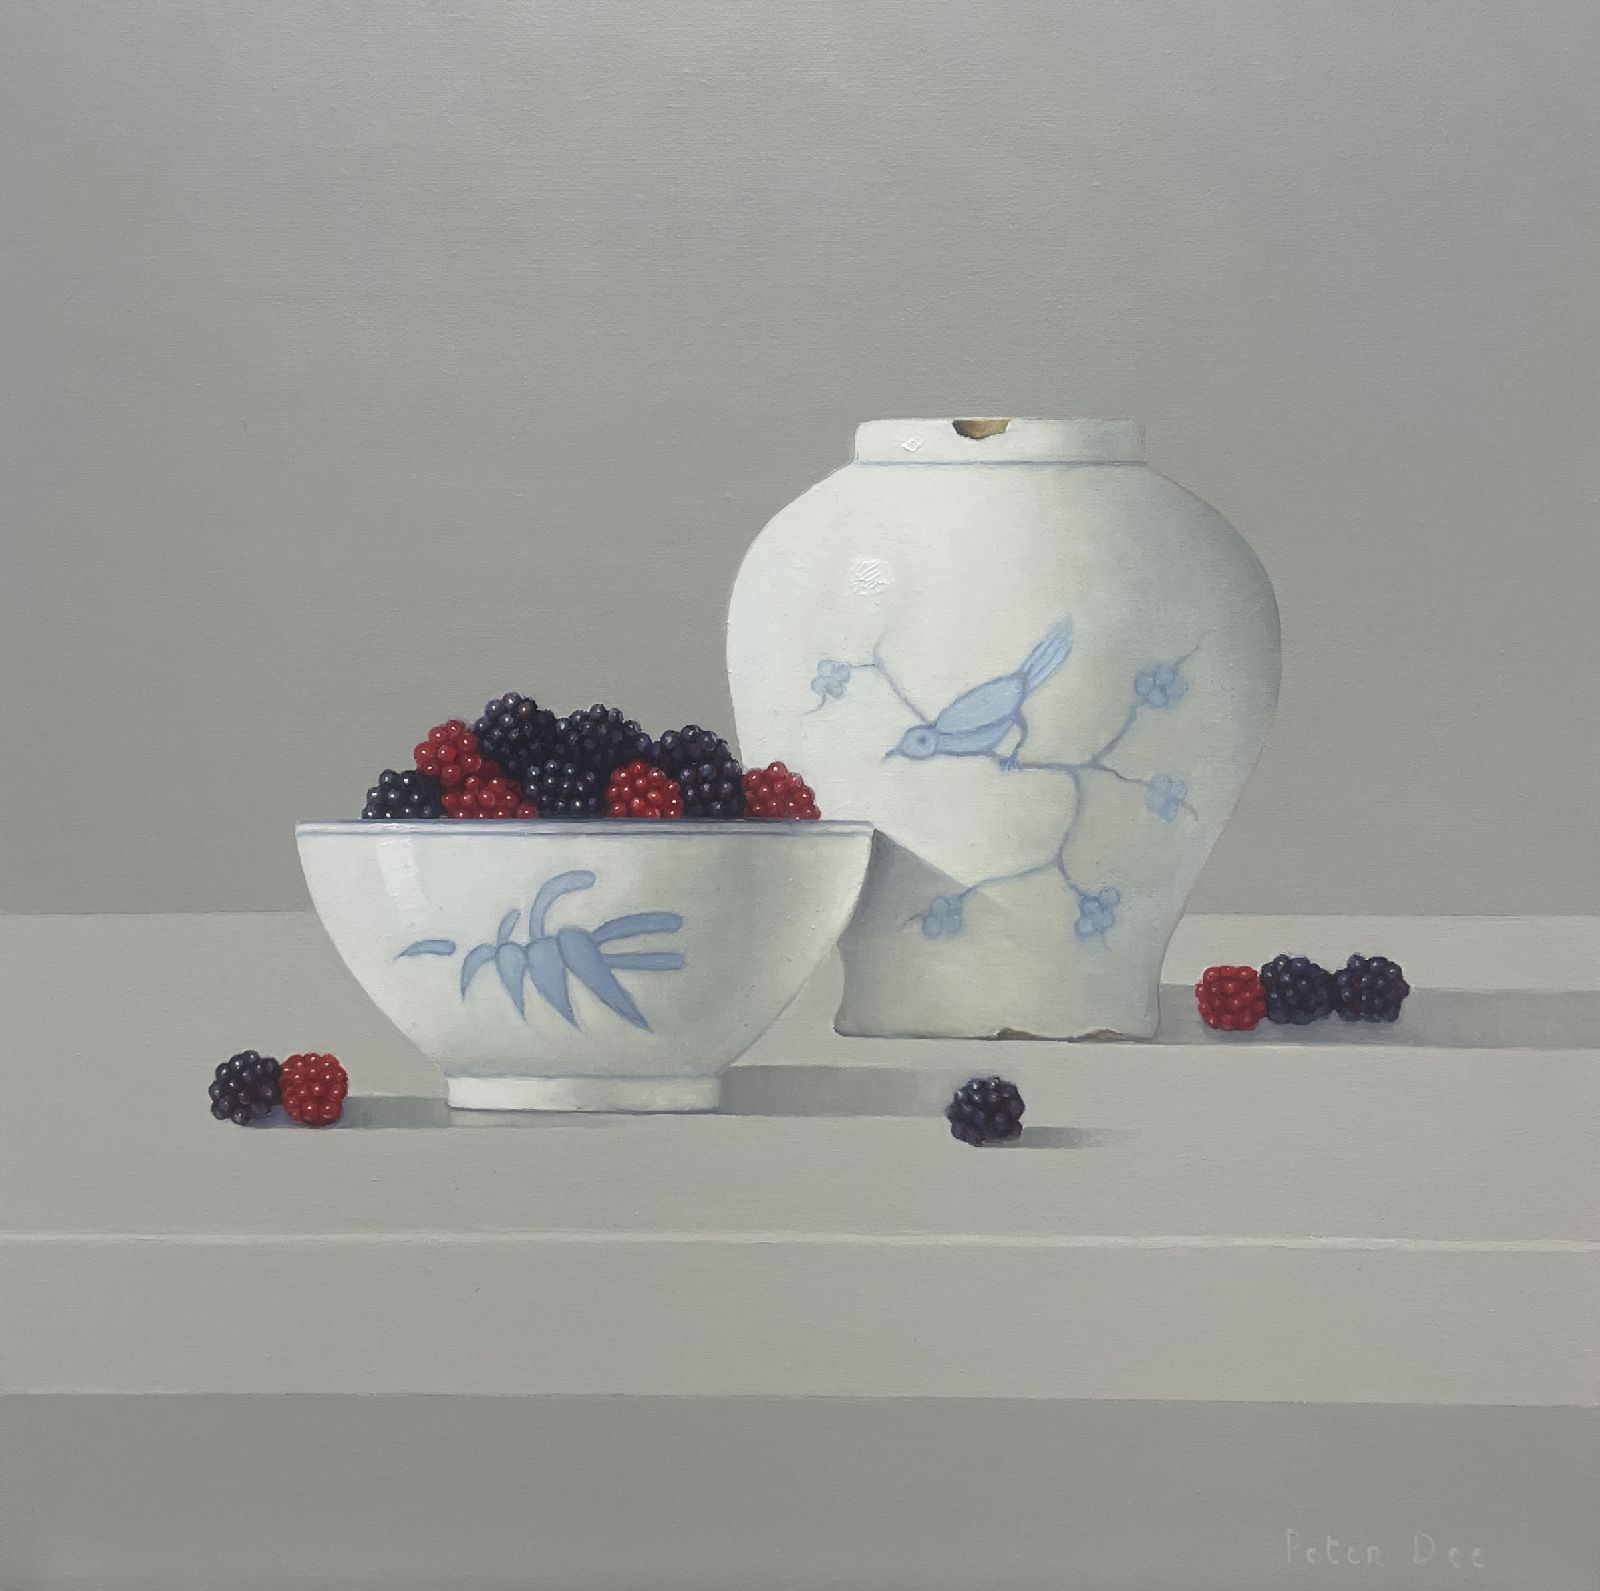 Peter Dee - Vase with bowl of berries